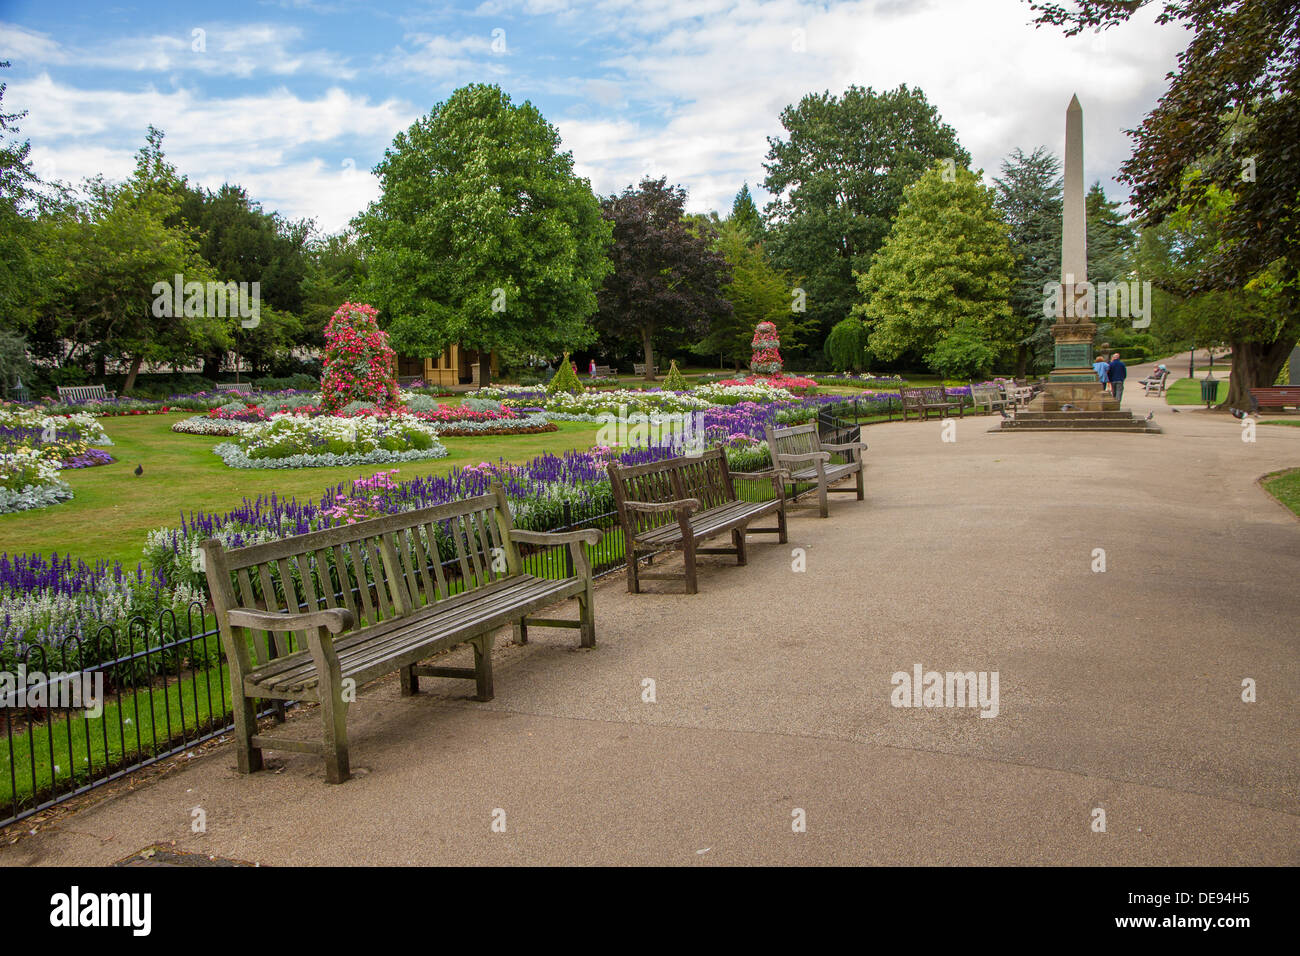 Los bancos del parque en Jephson Gardens, Royal Leamington Spa, Warwickshire. Foto de stock